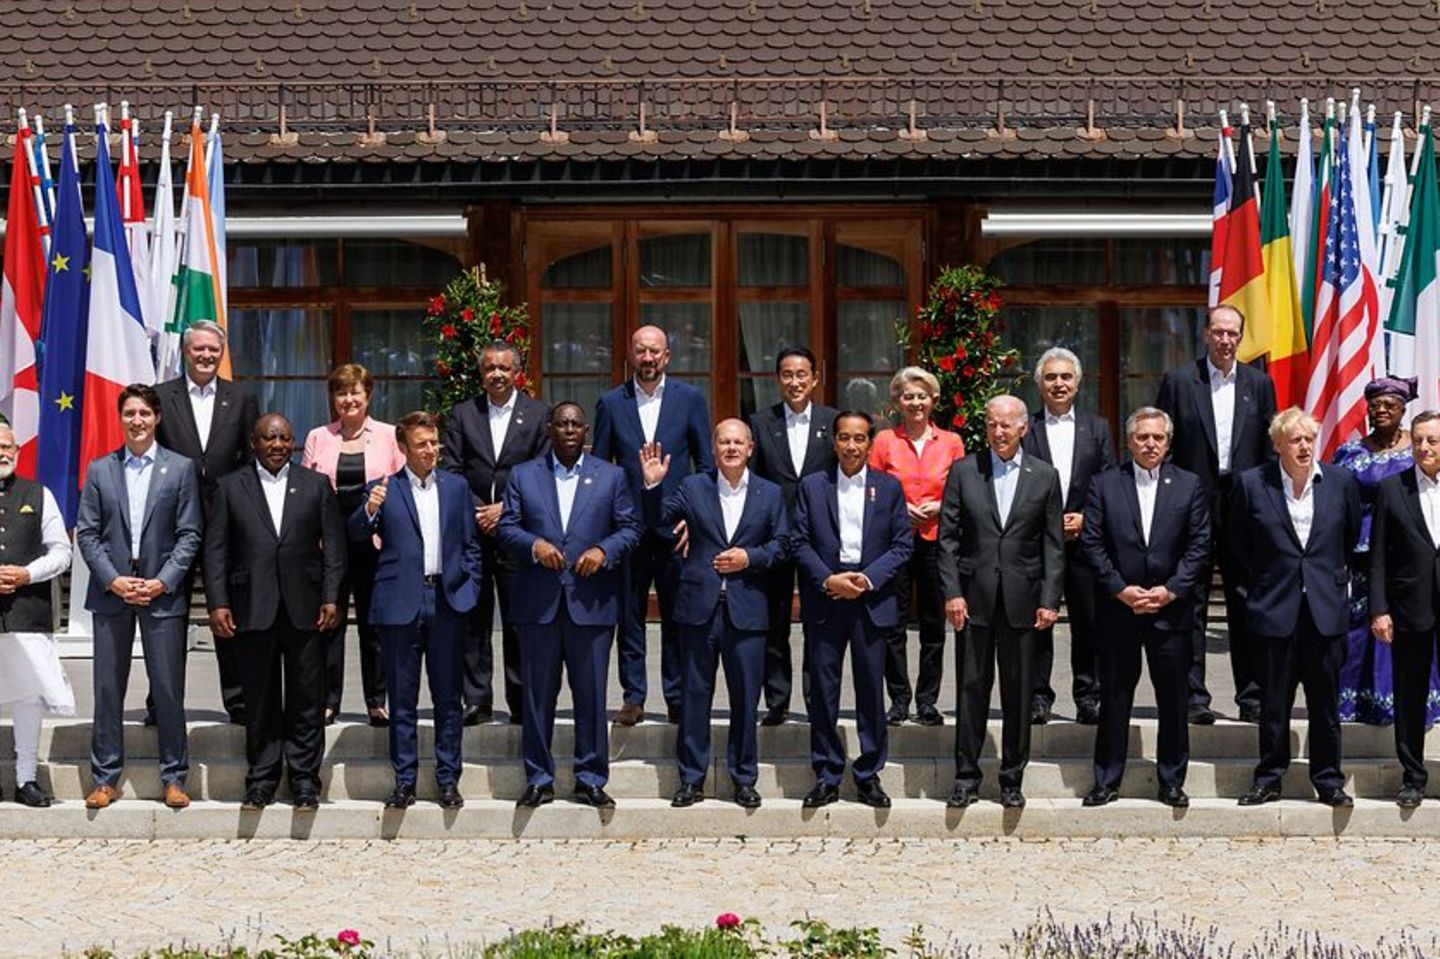 Gruppenfoto der G7 Staats- und Regierungschefs mit Vertretern der Partnerländer und Internationaler Organisationen beim Gipfeltreffen in Elmau.